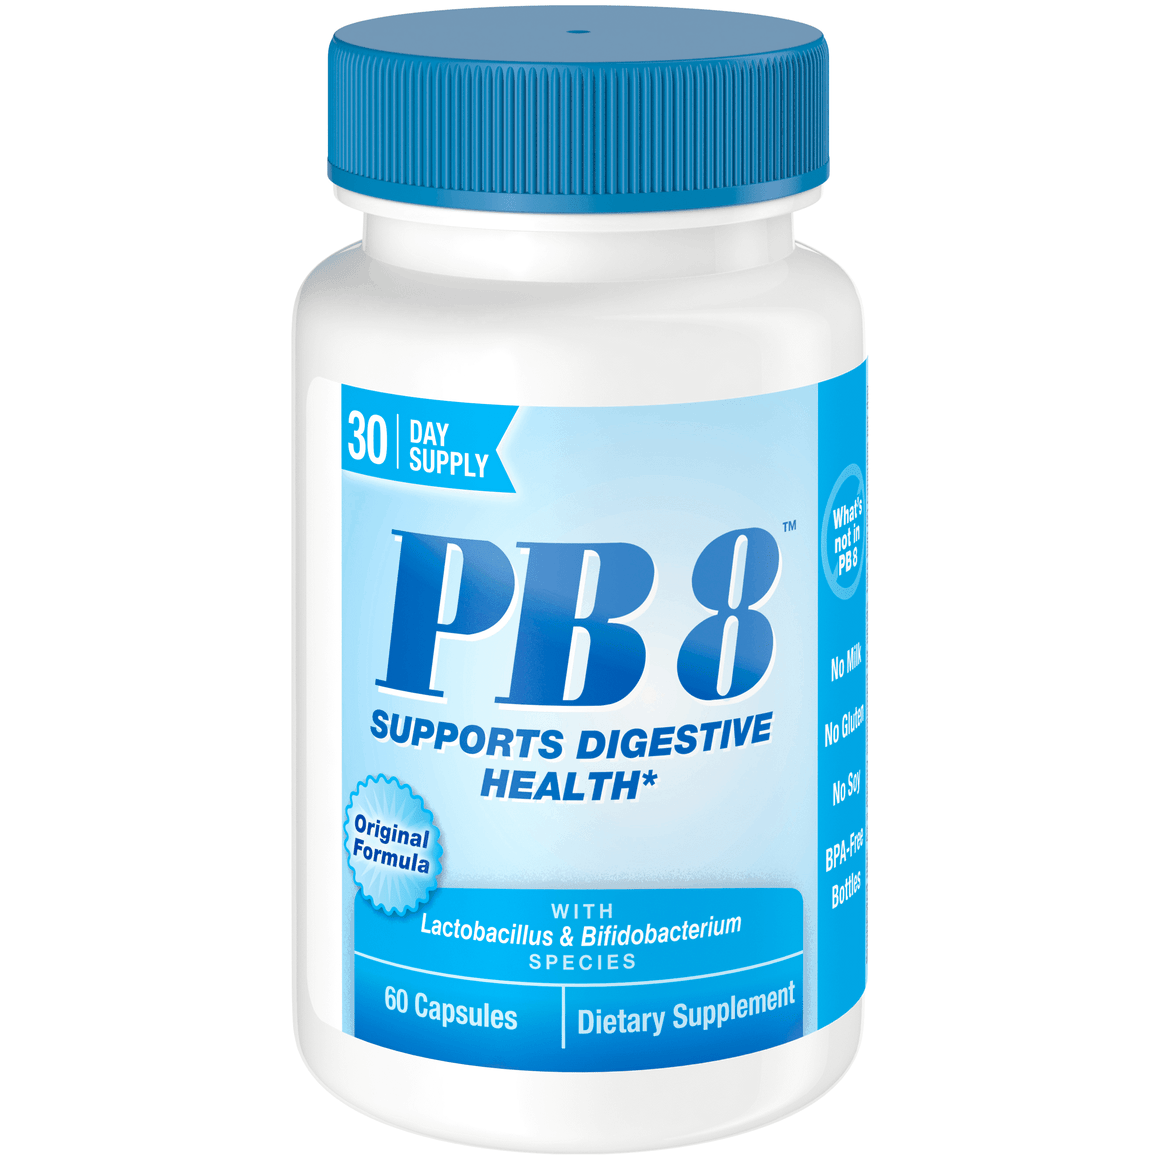 A bottle of Nutrition Now PB 8™ Original Probiotic